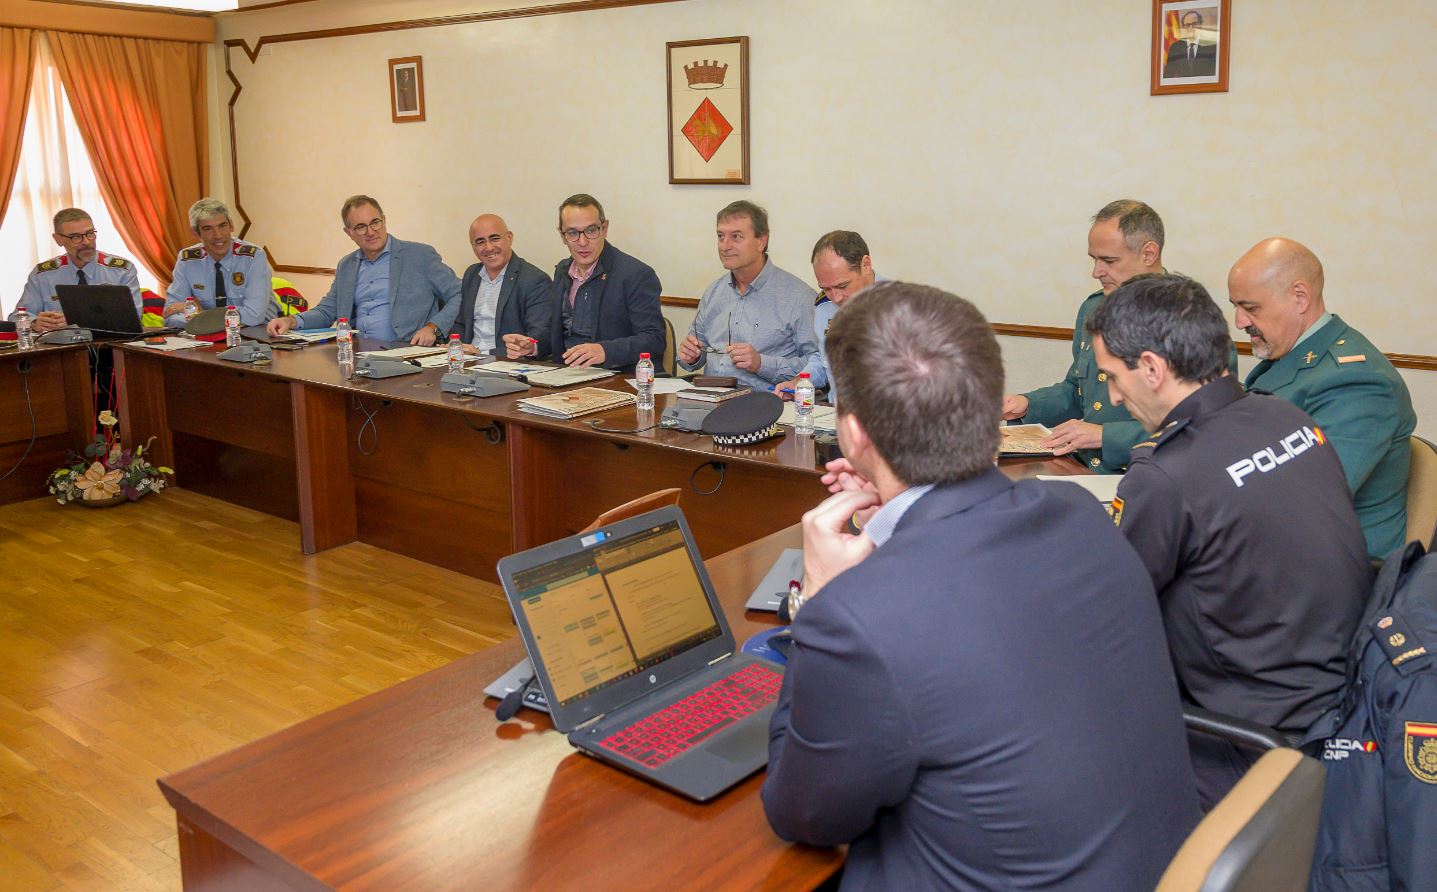 Fotografia de la reunió de la Junta Local de Seguretat que s'ha celebrat aquest dilluns 25 de novembre a l'Ajuntament de Constantí.